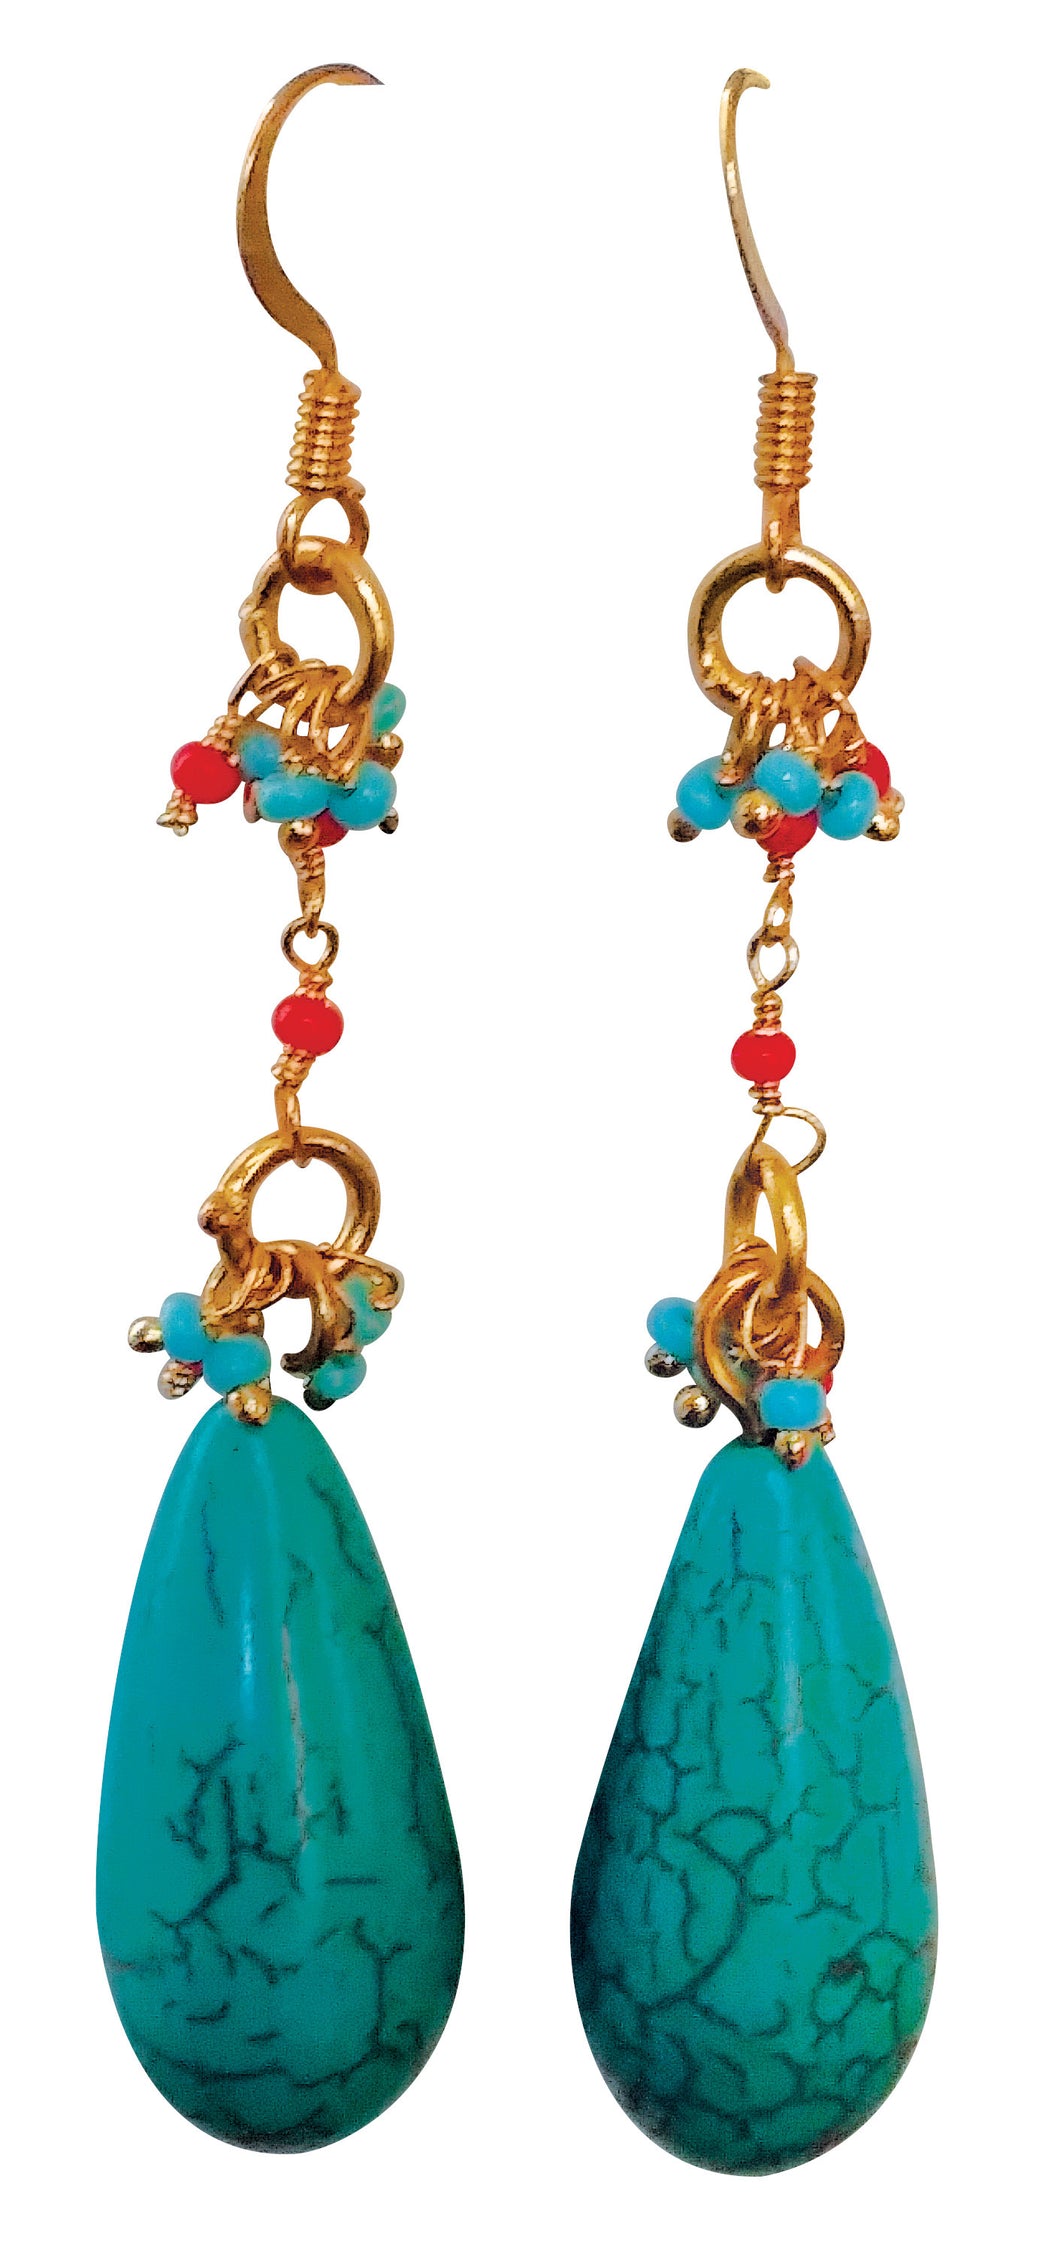 Morocco - Earrings - Funraise 